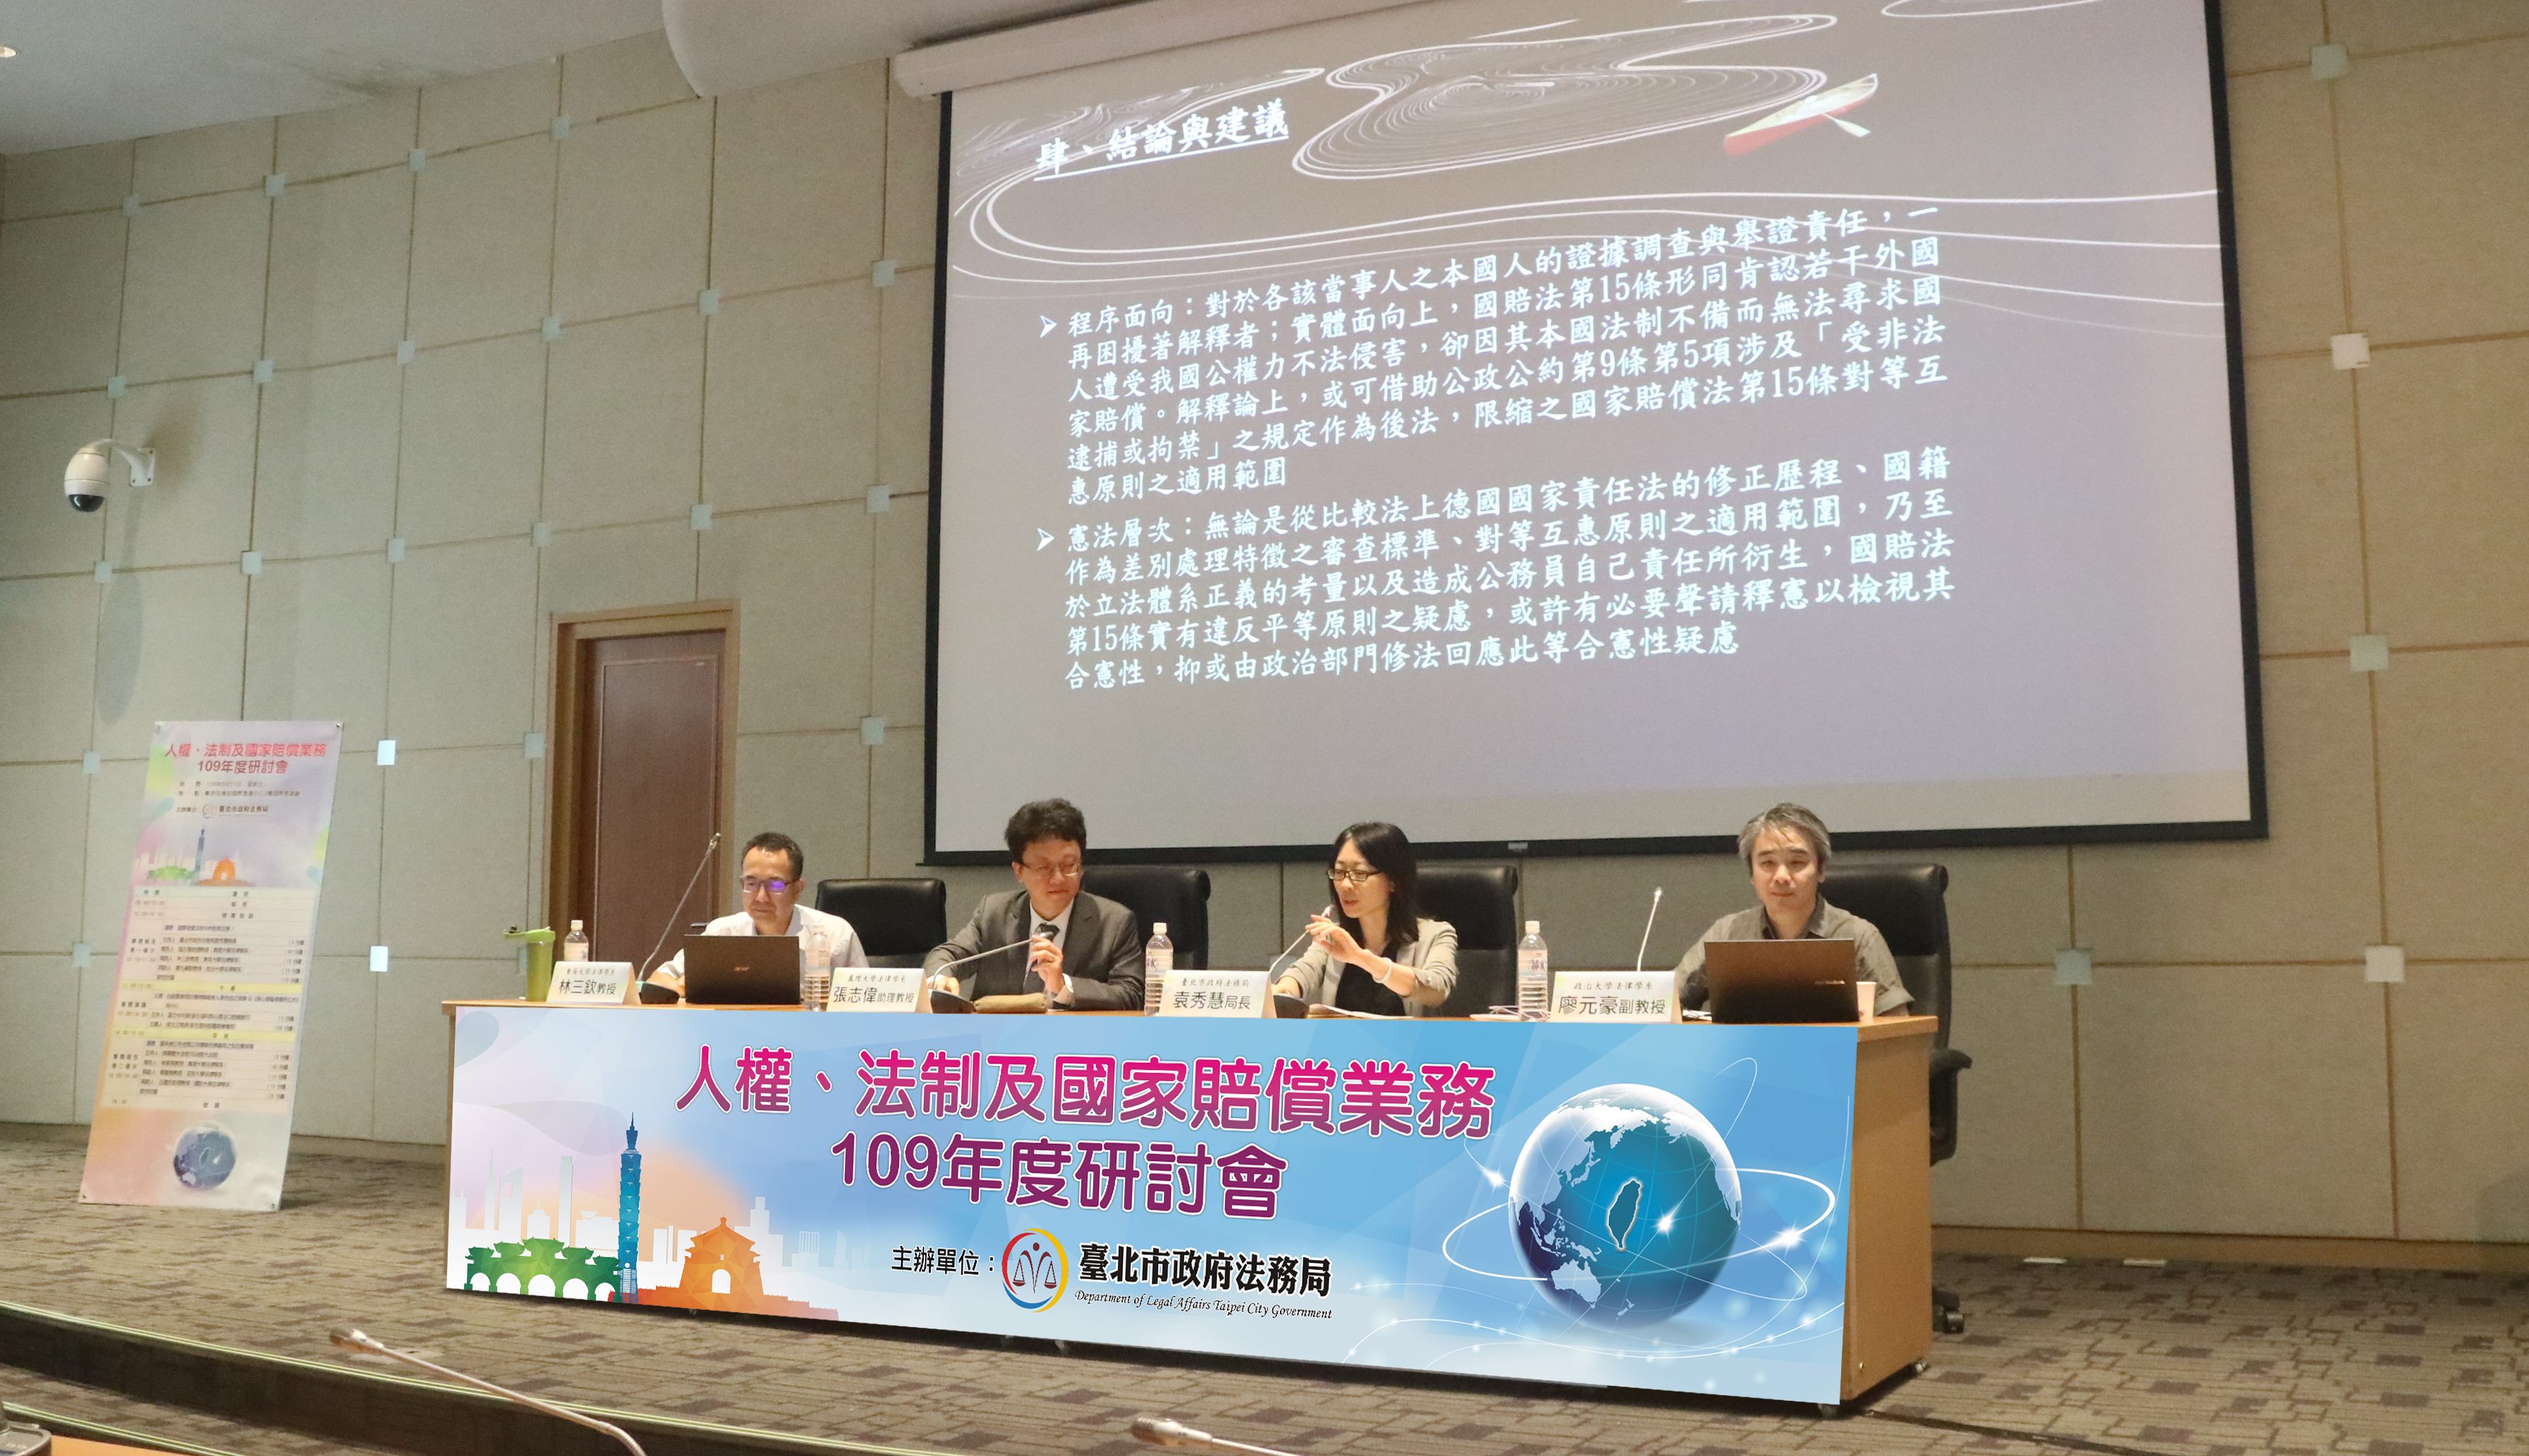 109年度人權、法制及國家賠償業務研討會